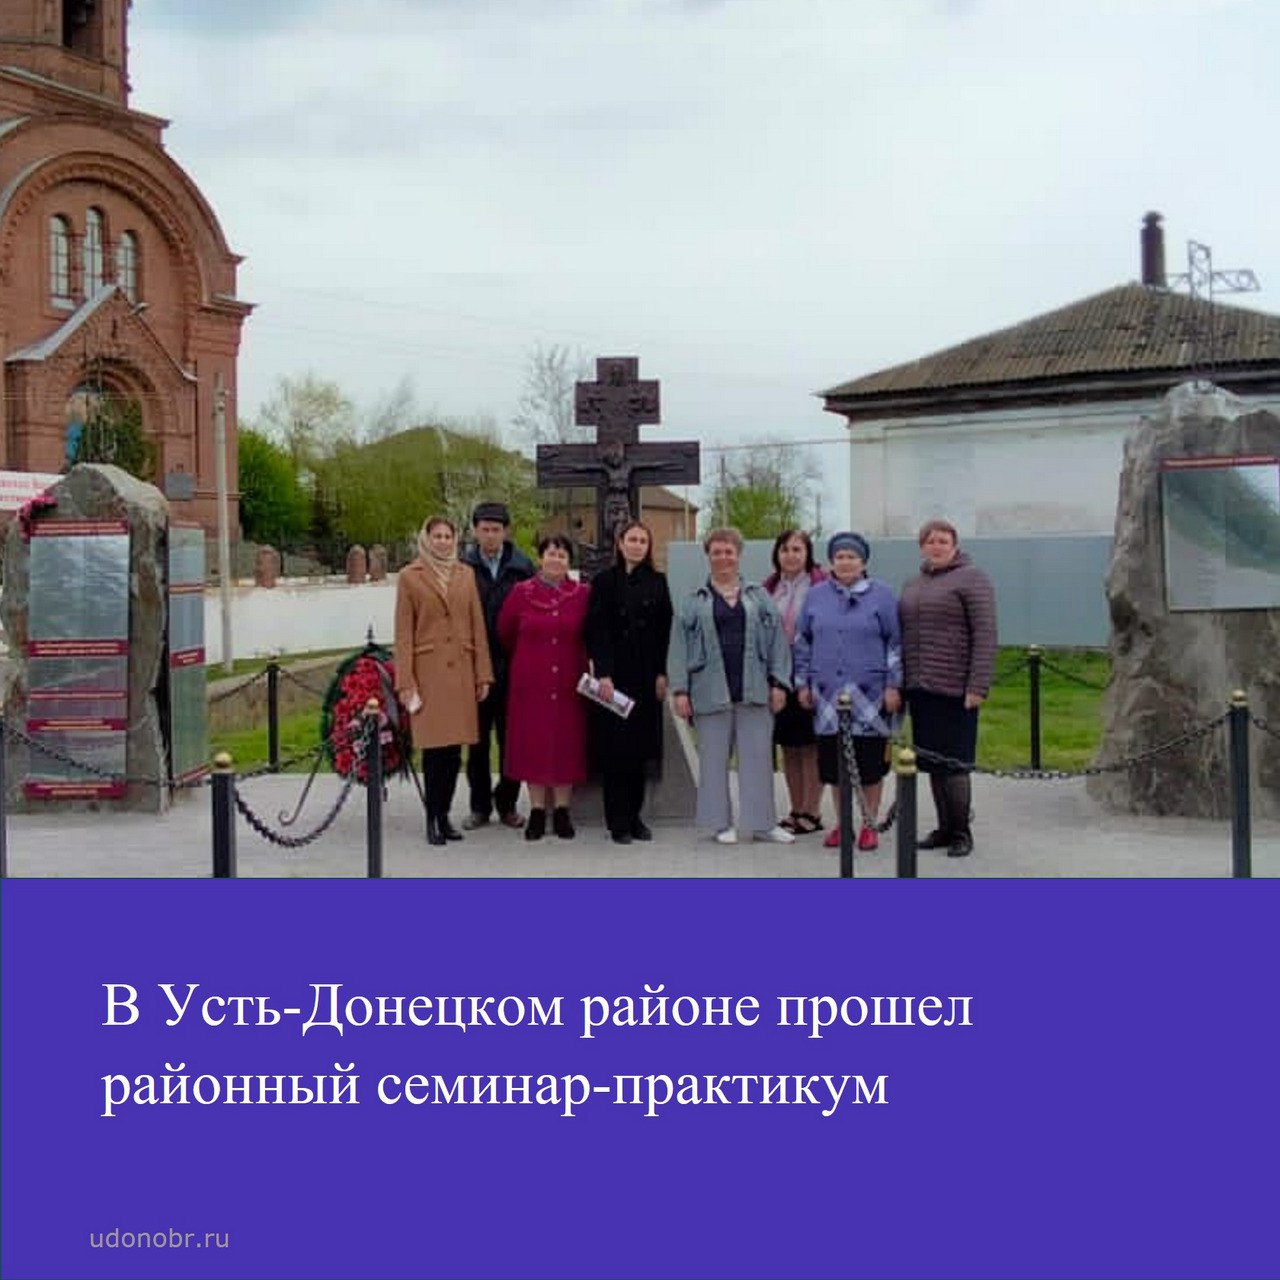 В Усть-Донецком районе прошел районный семинар-практикум